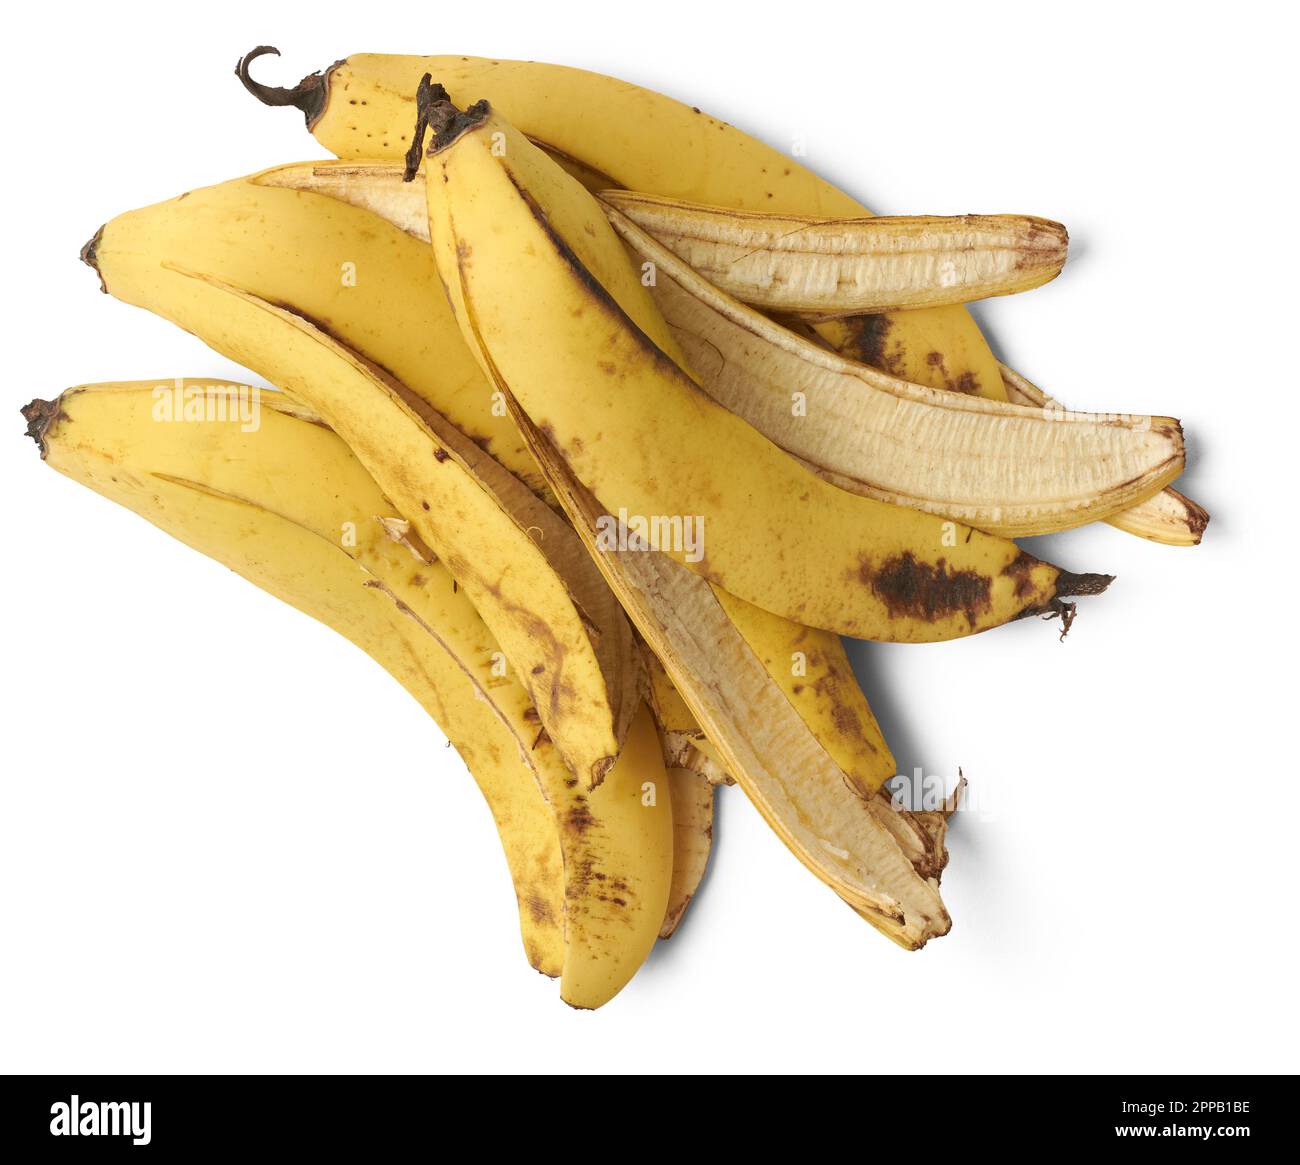 Bucce di banana immagini e fotografie stock ad alta risoluzione - Alamy